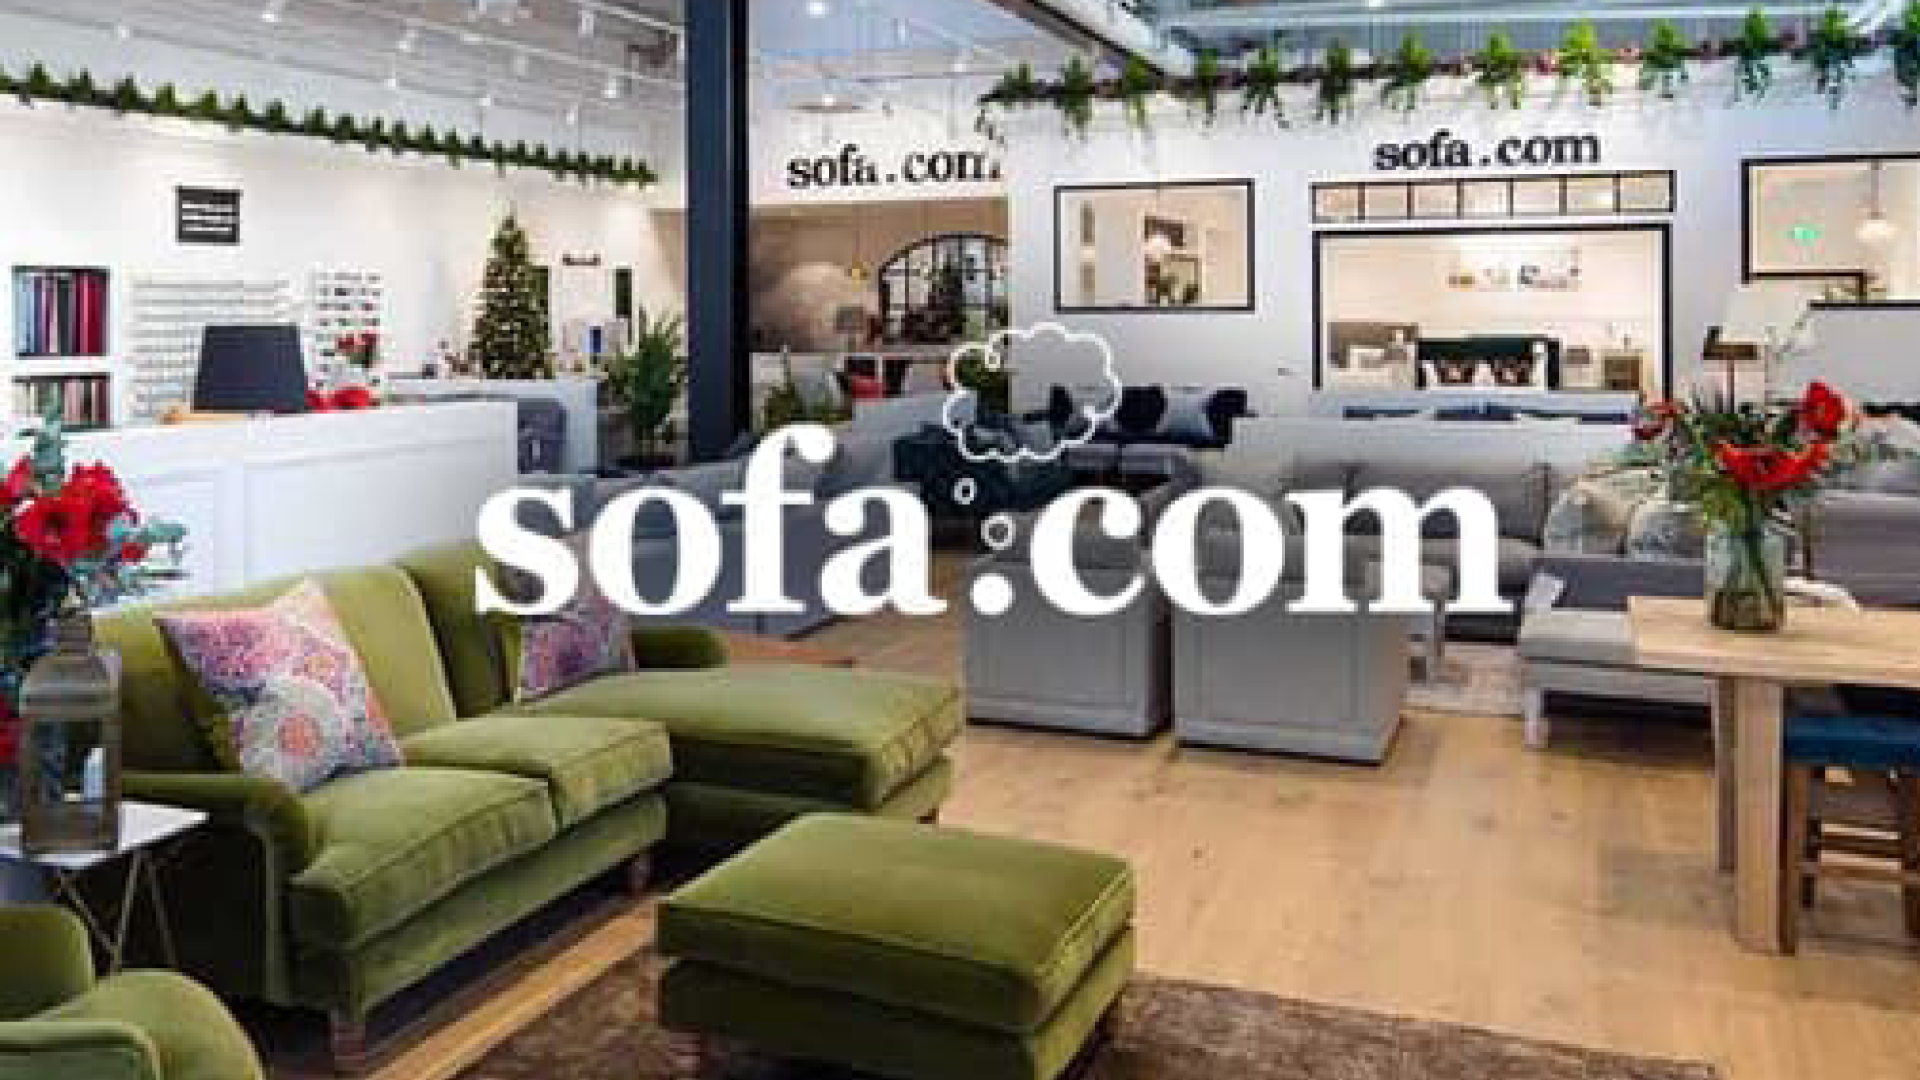 sofa.com sofas